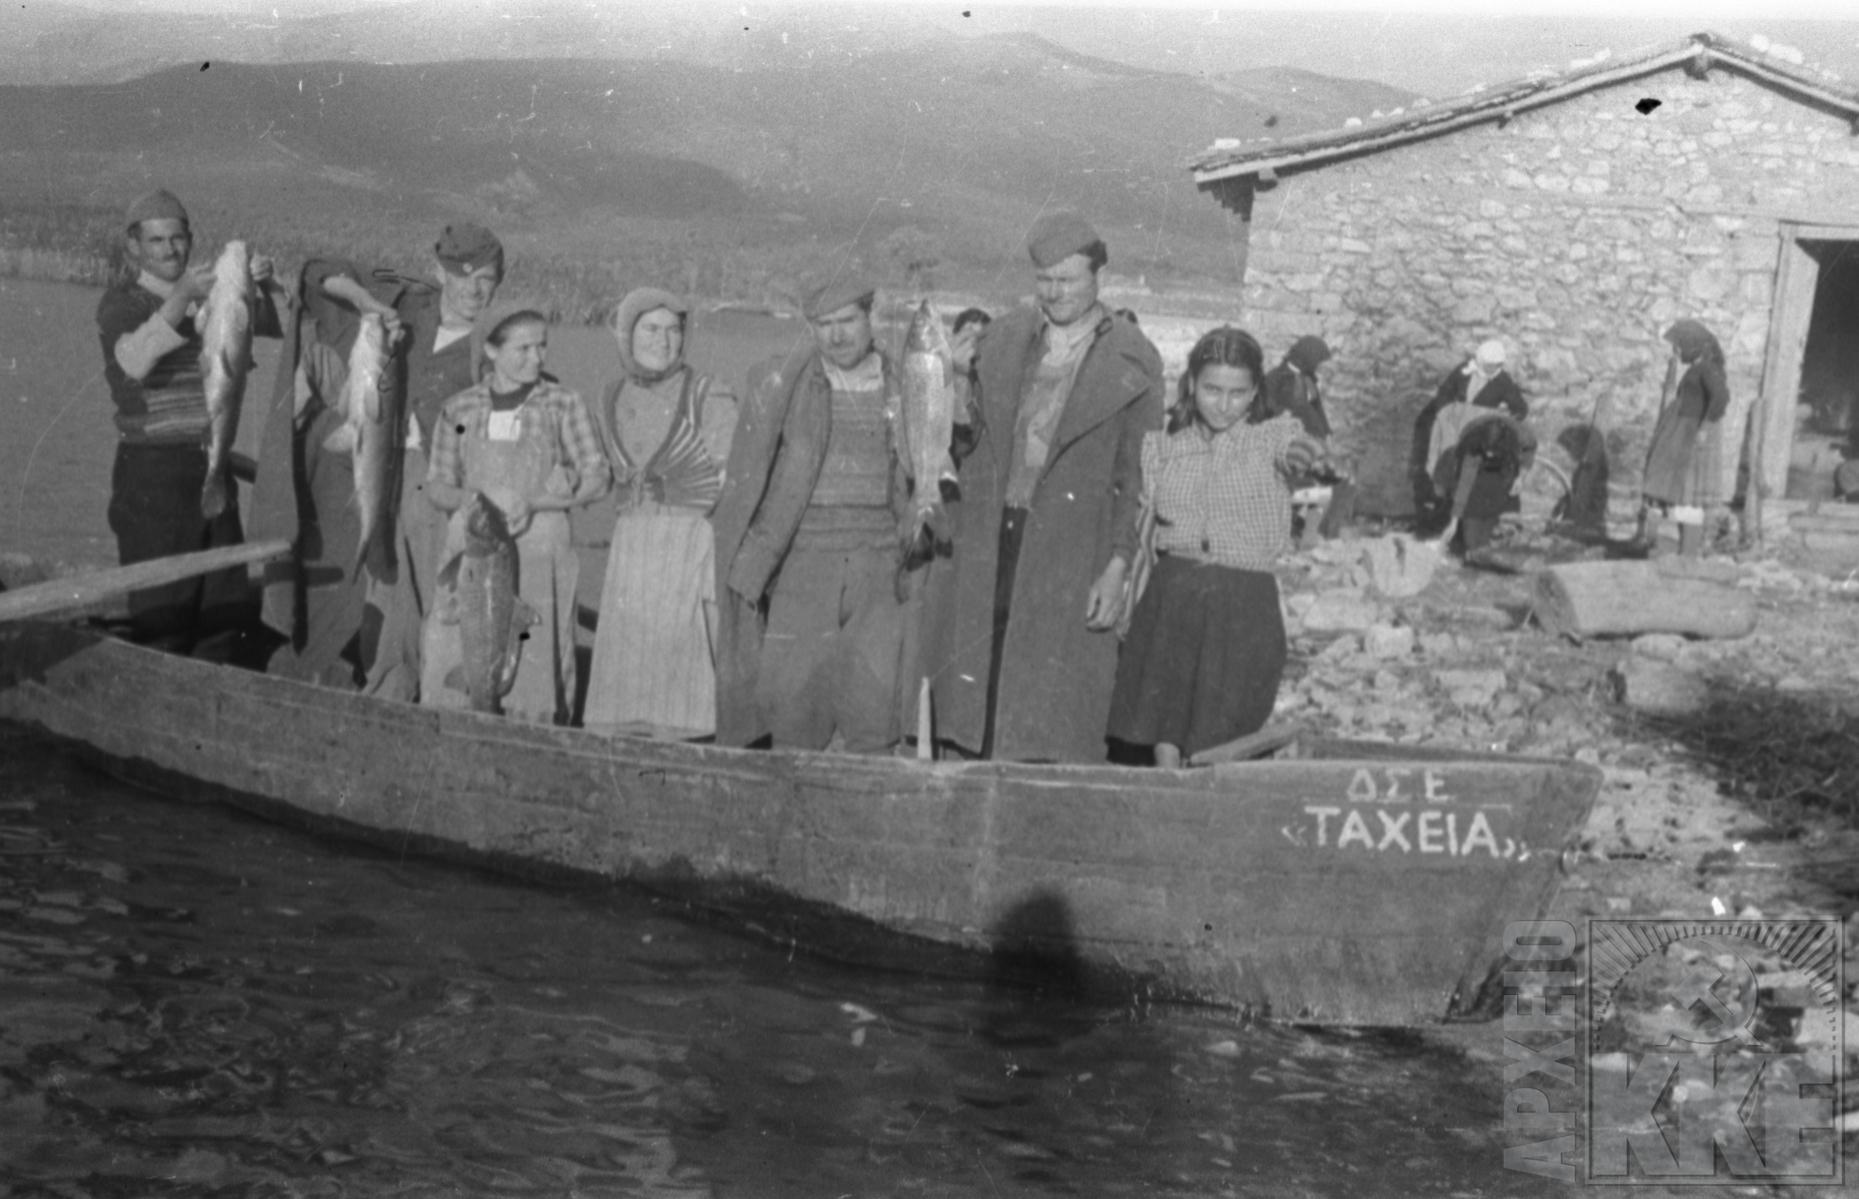 Η βάρκα η Ταχεία με την οποία περνούσαν από τη Μικρολίμνη στο Αγκαθωτό